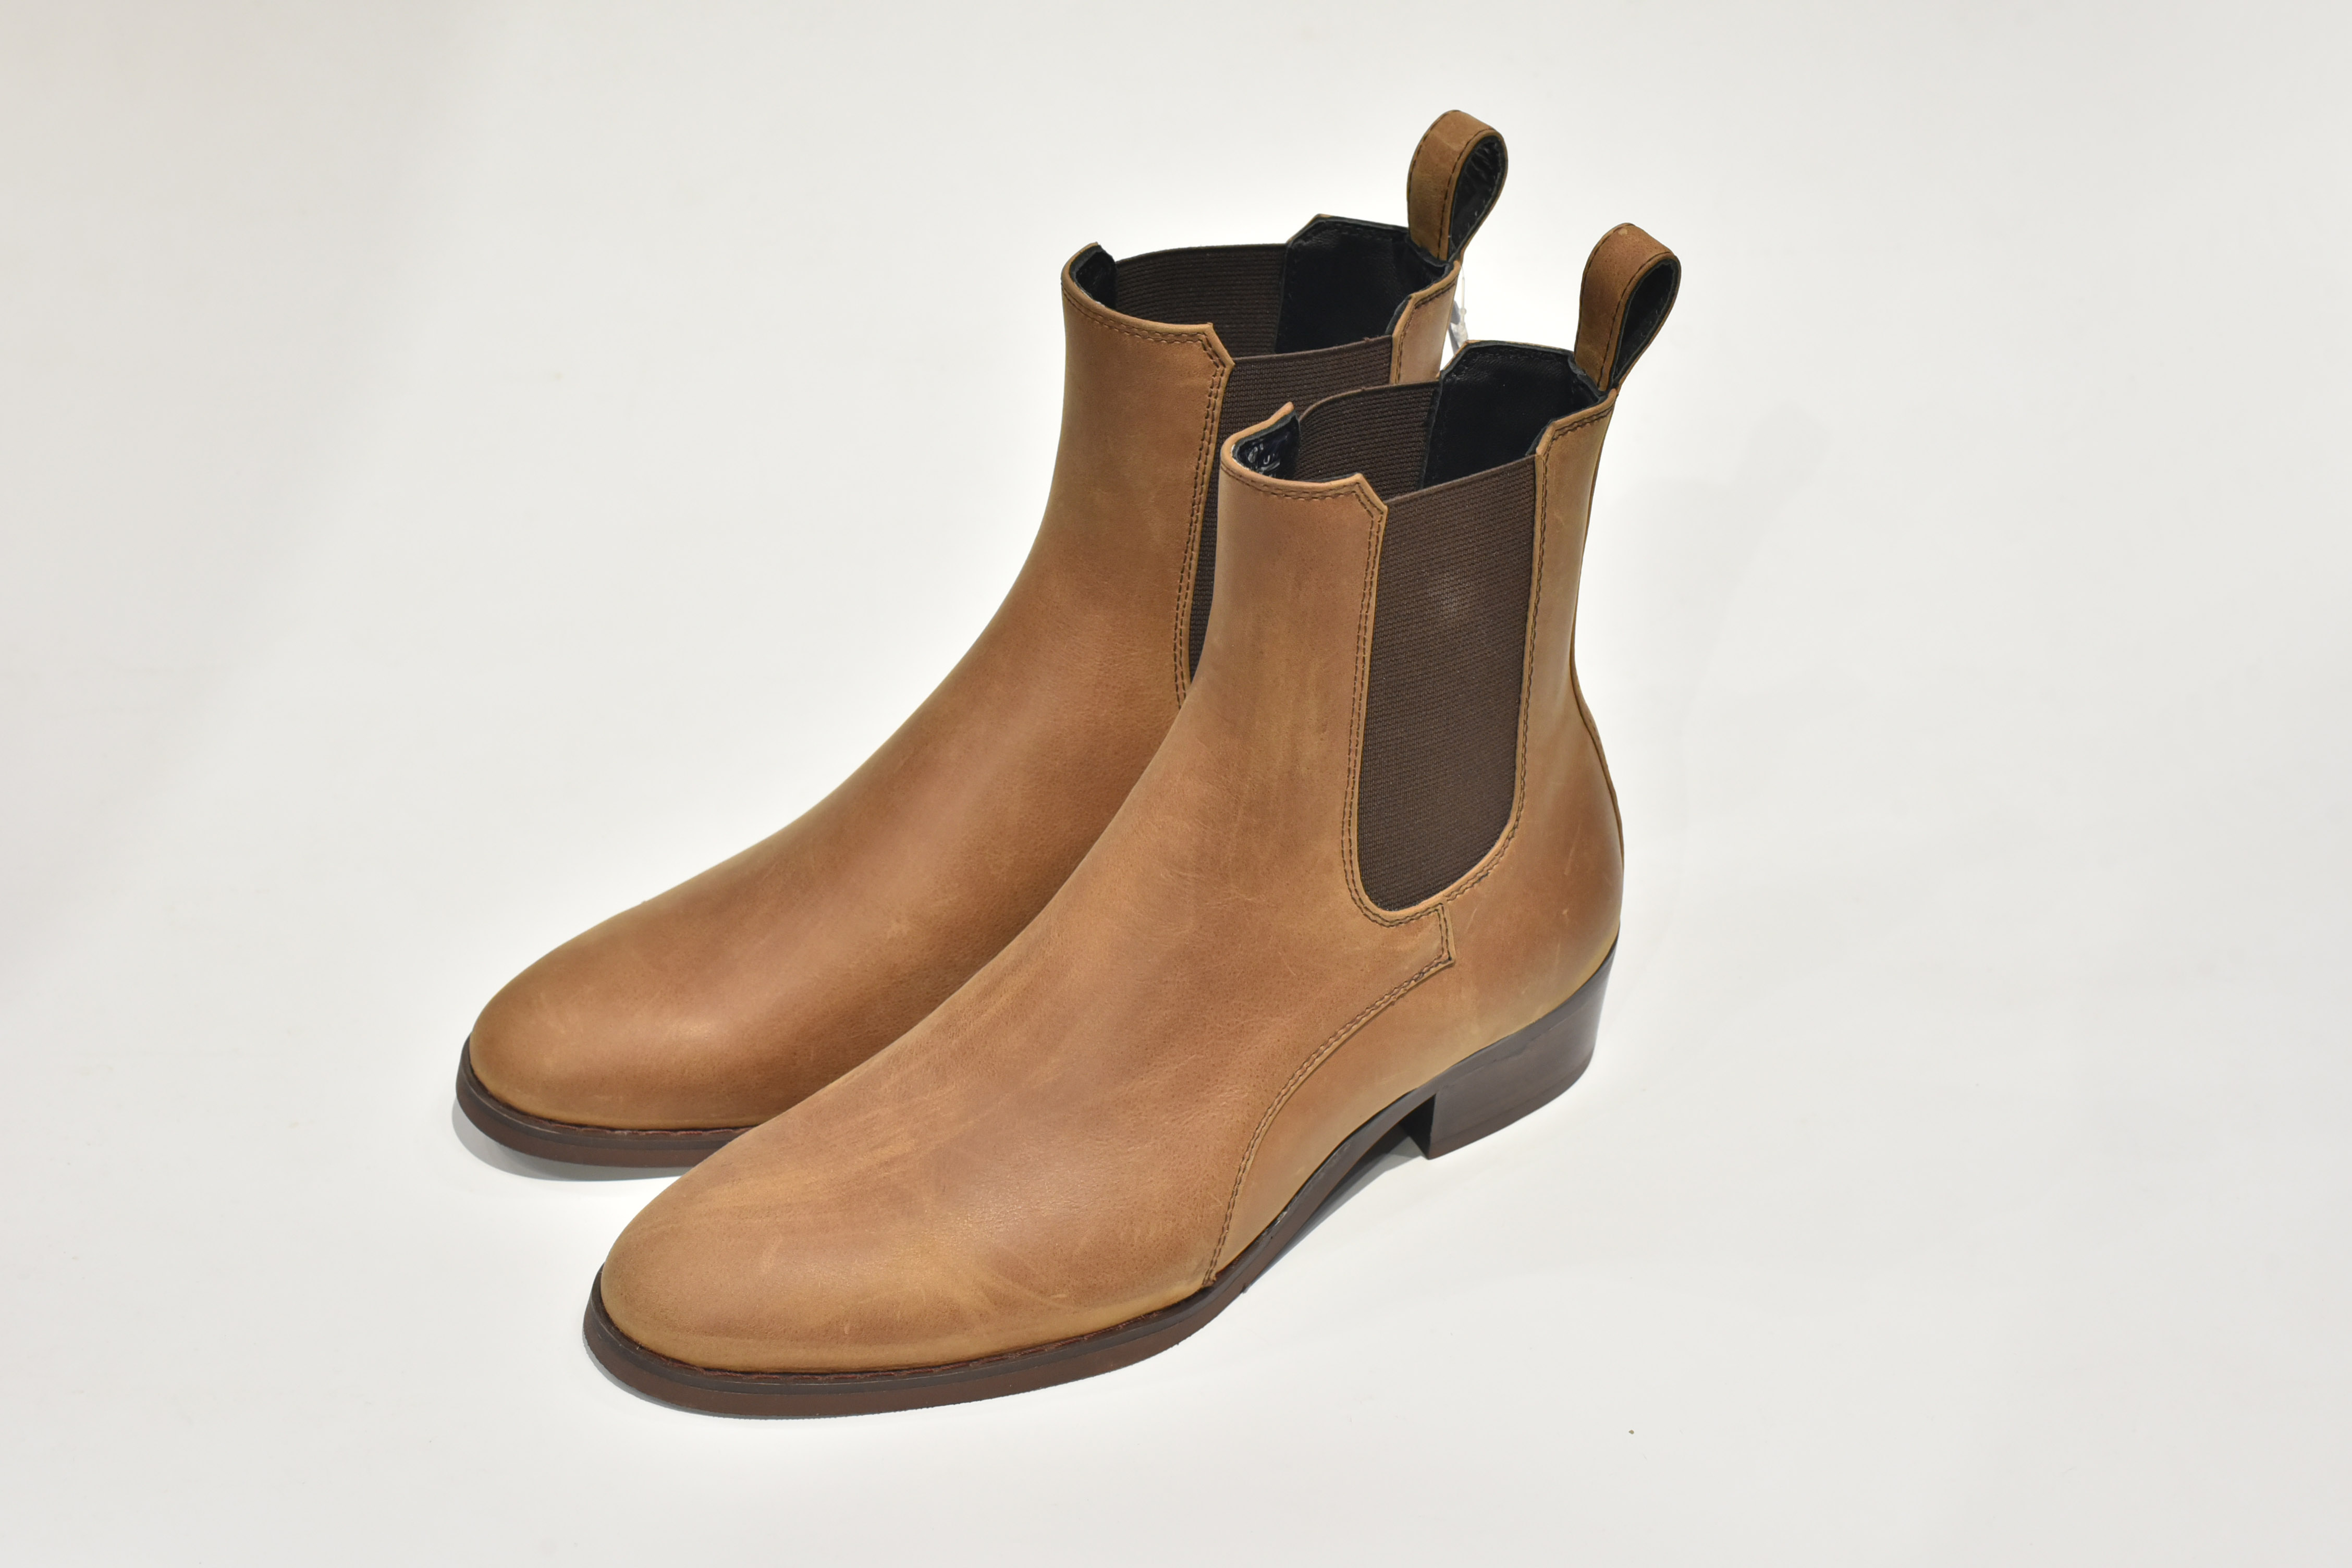 TATHANIUM Footwear Giày Chelsea boot nam gót 4cm cổ cao màu nâu lợt da bò